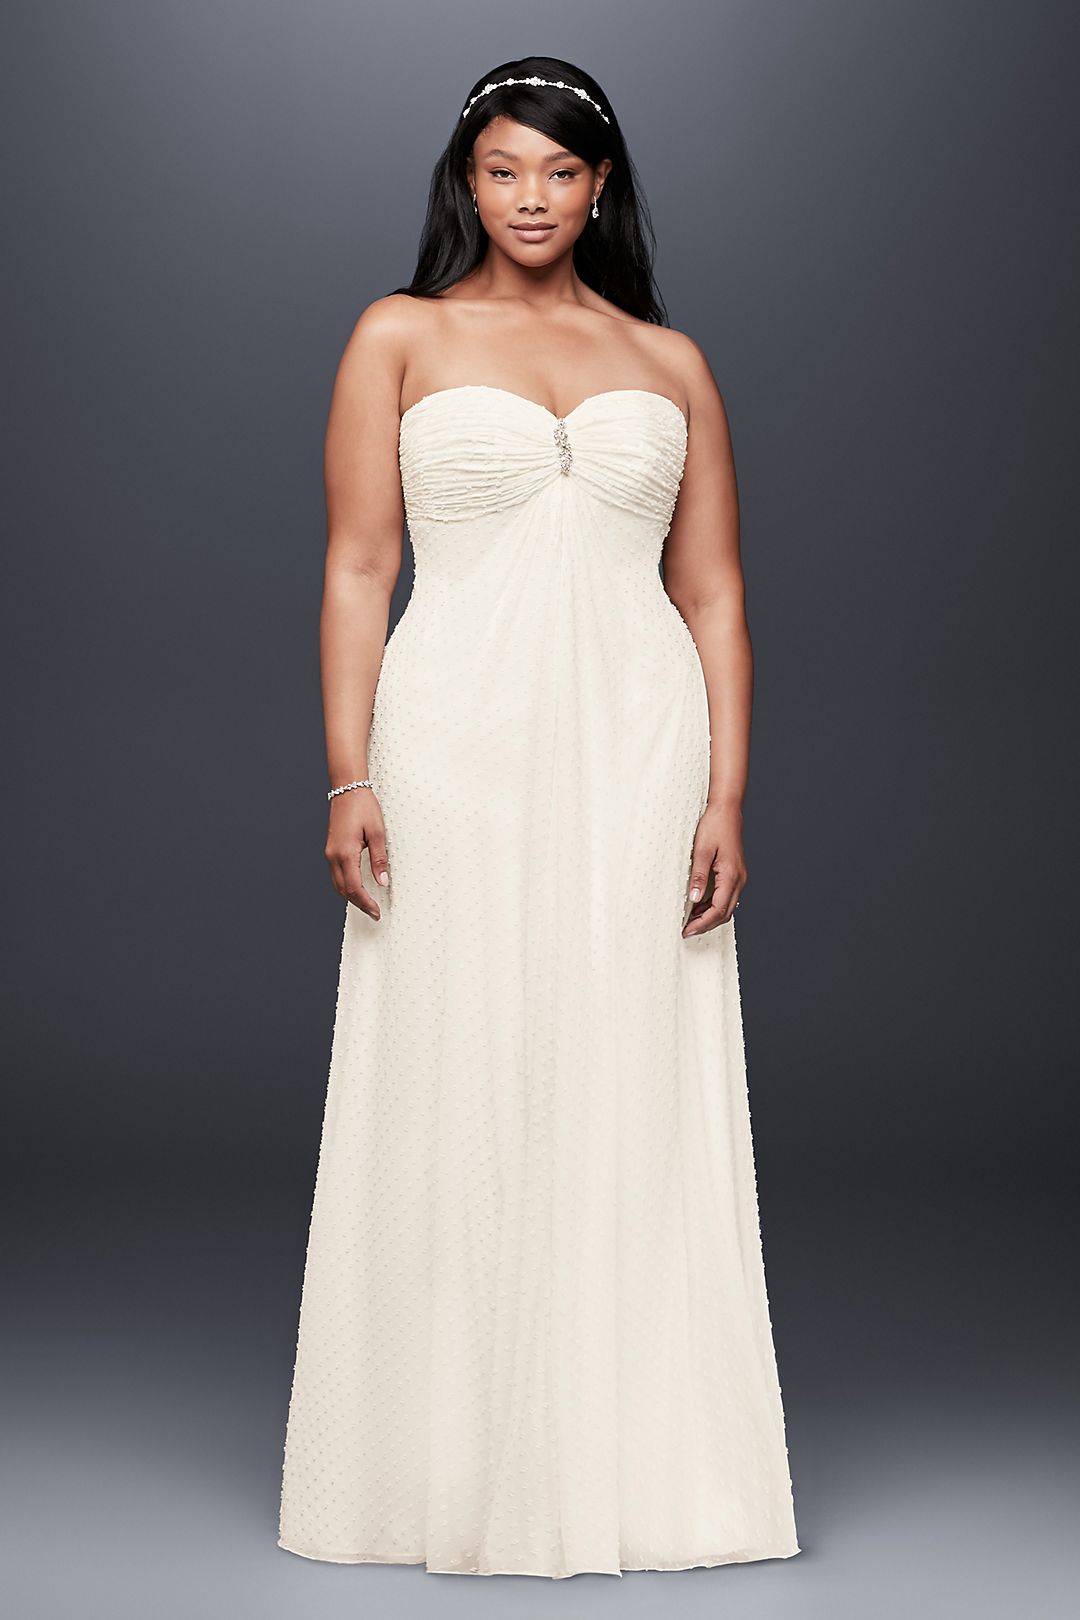 Dotted Chiffon Plus Size Wedding Dress Image 1